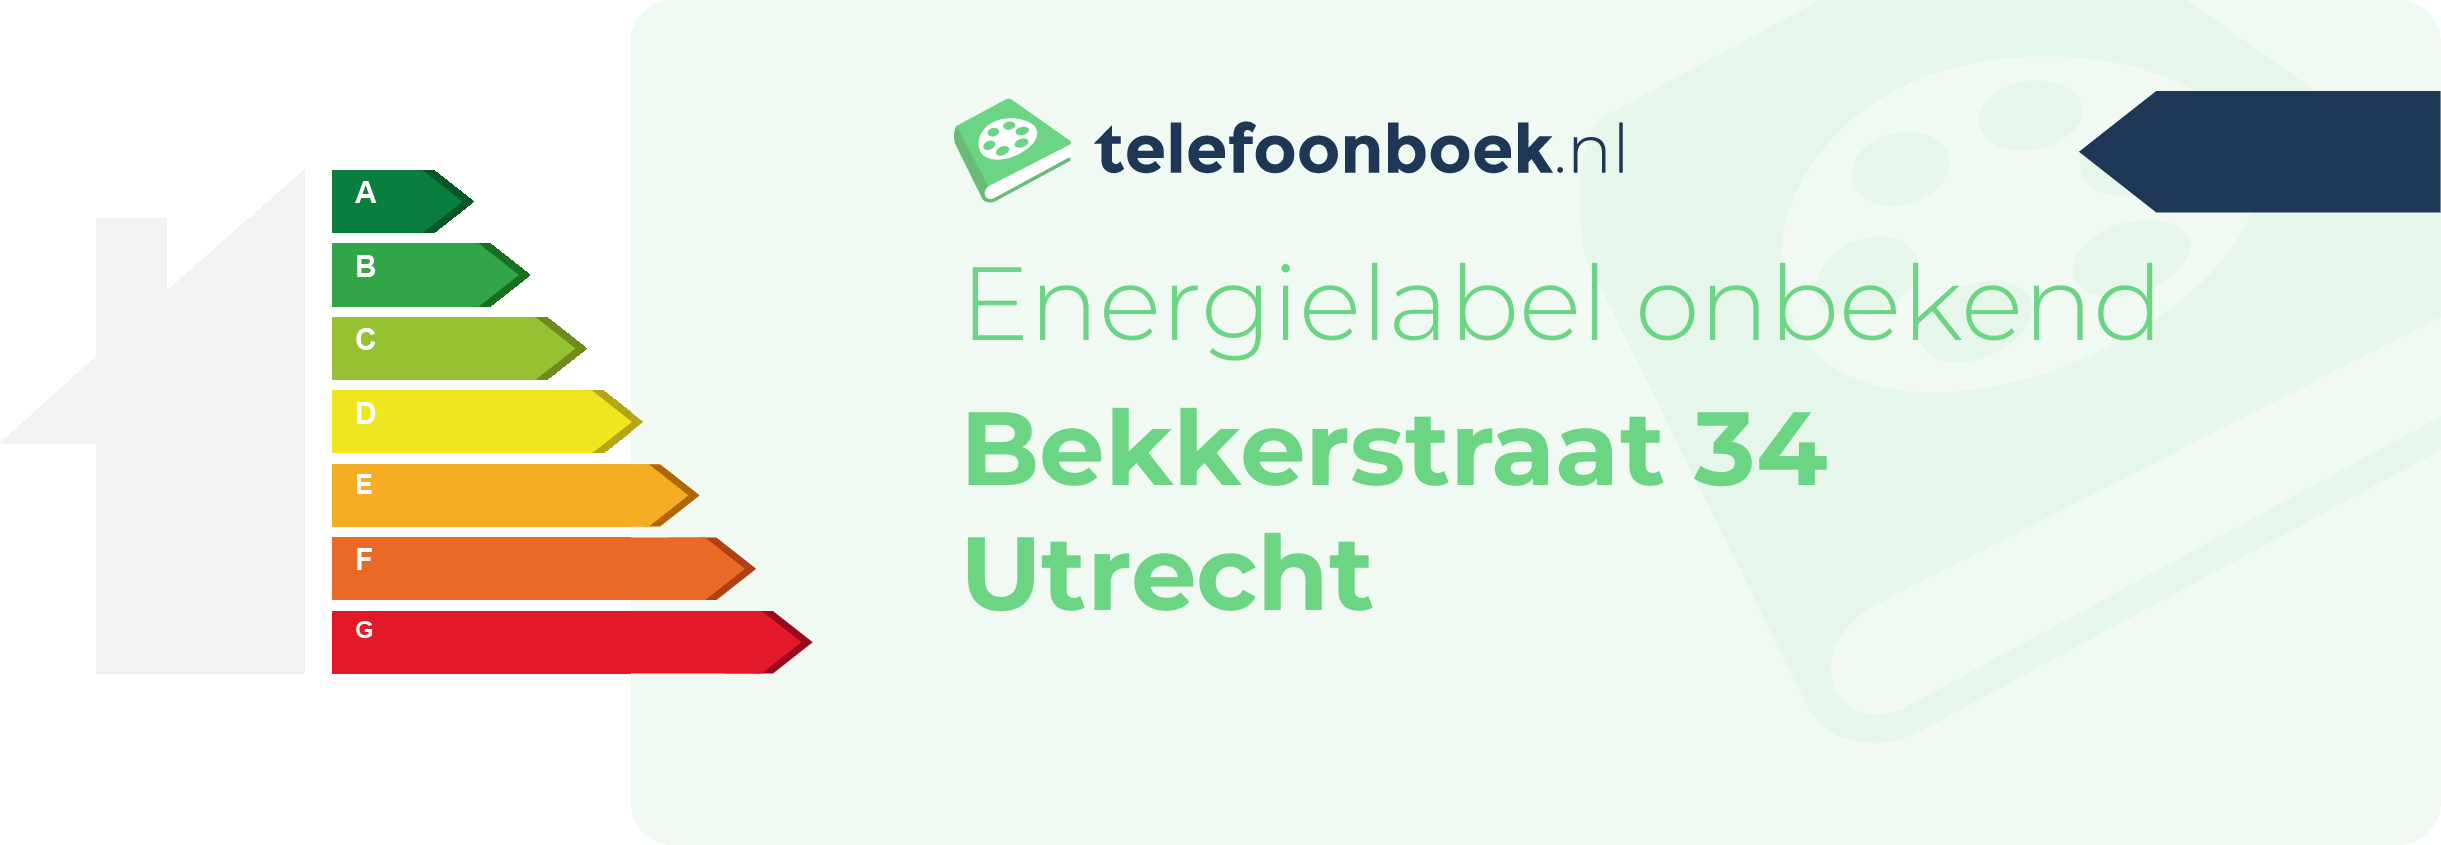 Energielabel Bekkerstraat 34 Utrecht